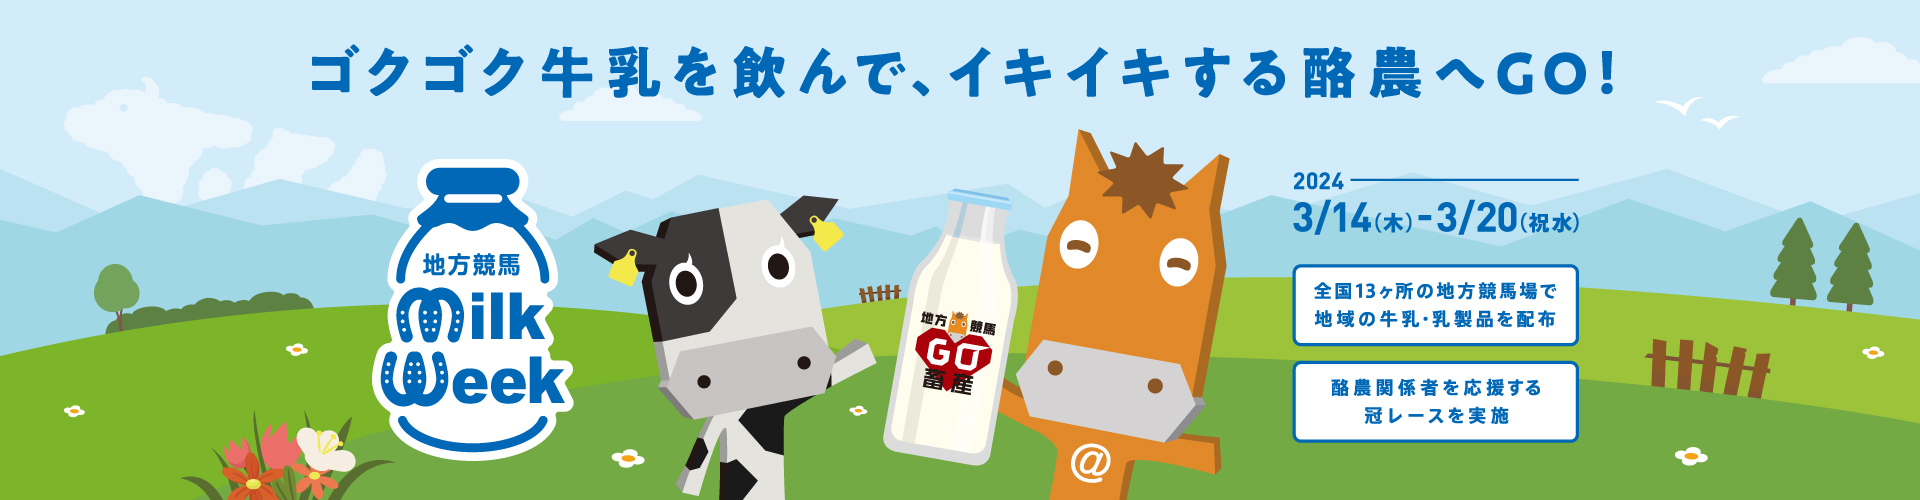 ゴクゴク牛乳を飲んで、イキイキする酪農へGO！地方競馬ミルクウィークキャンペーン